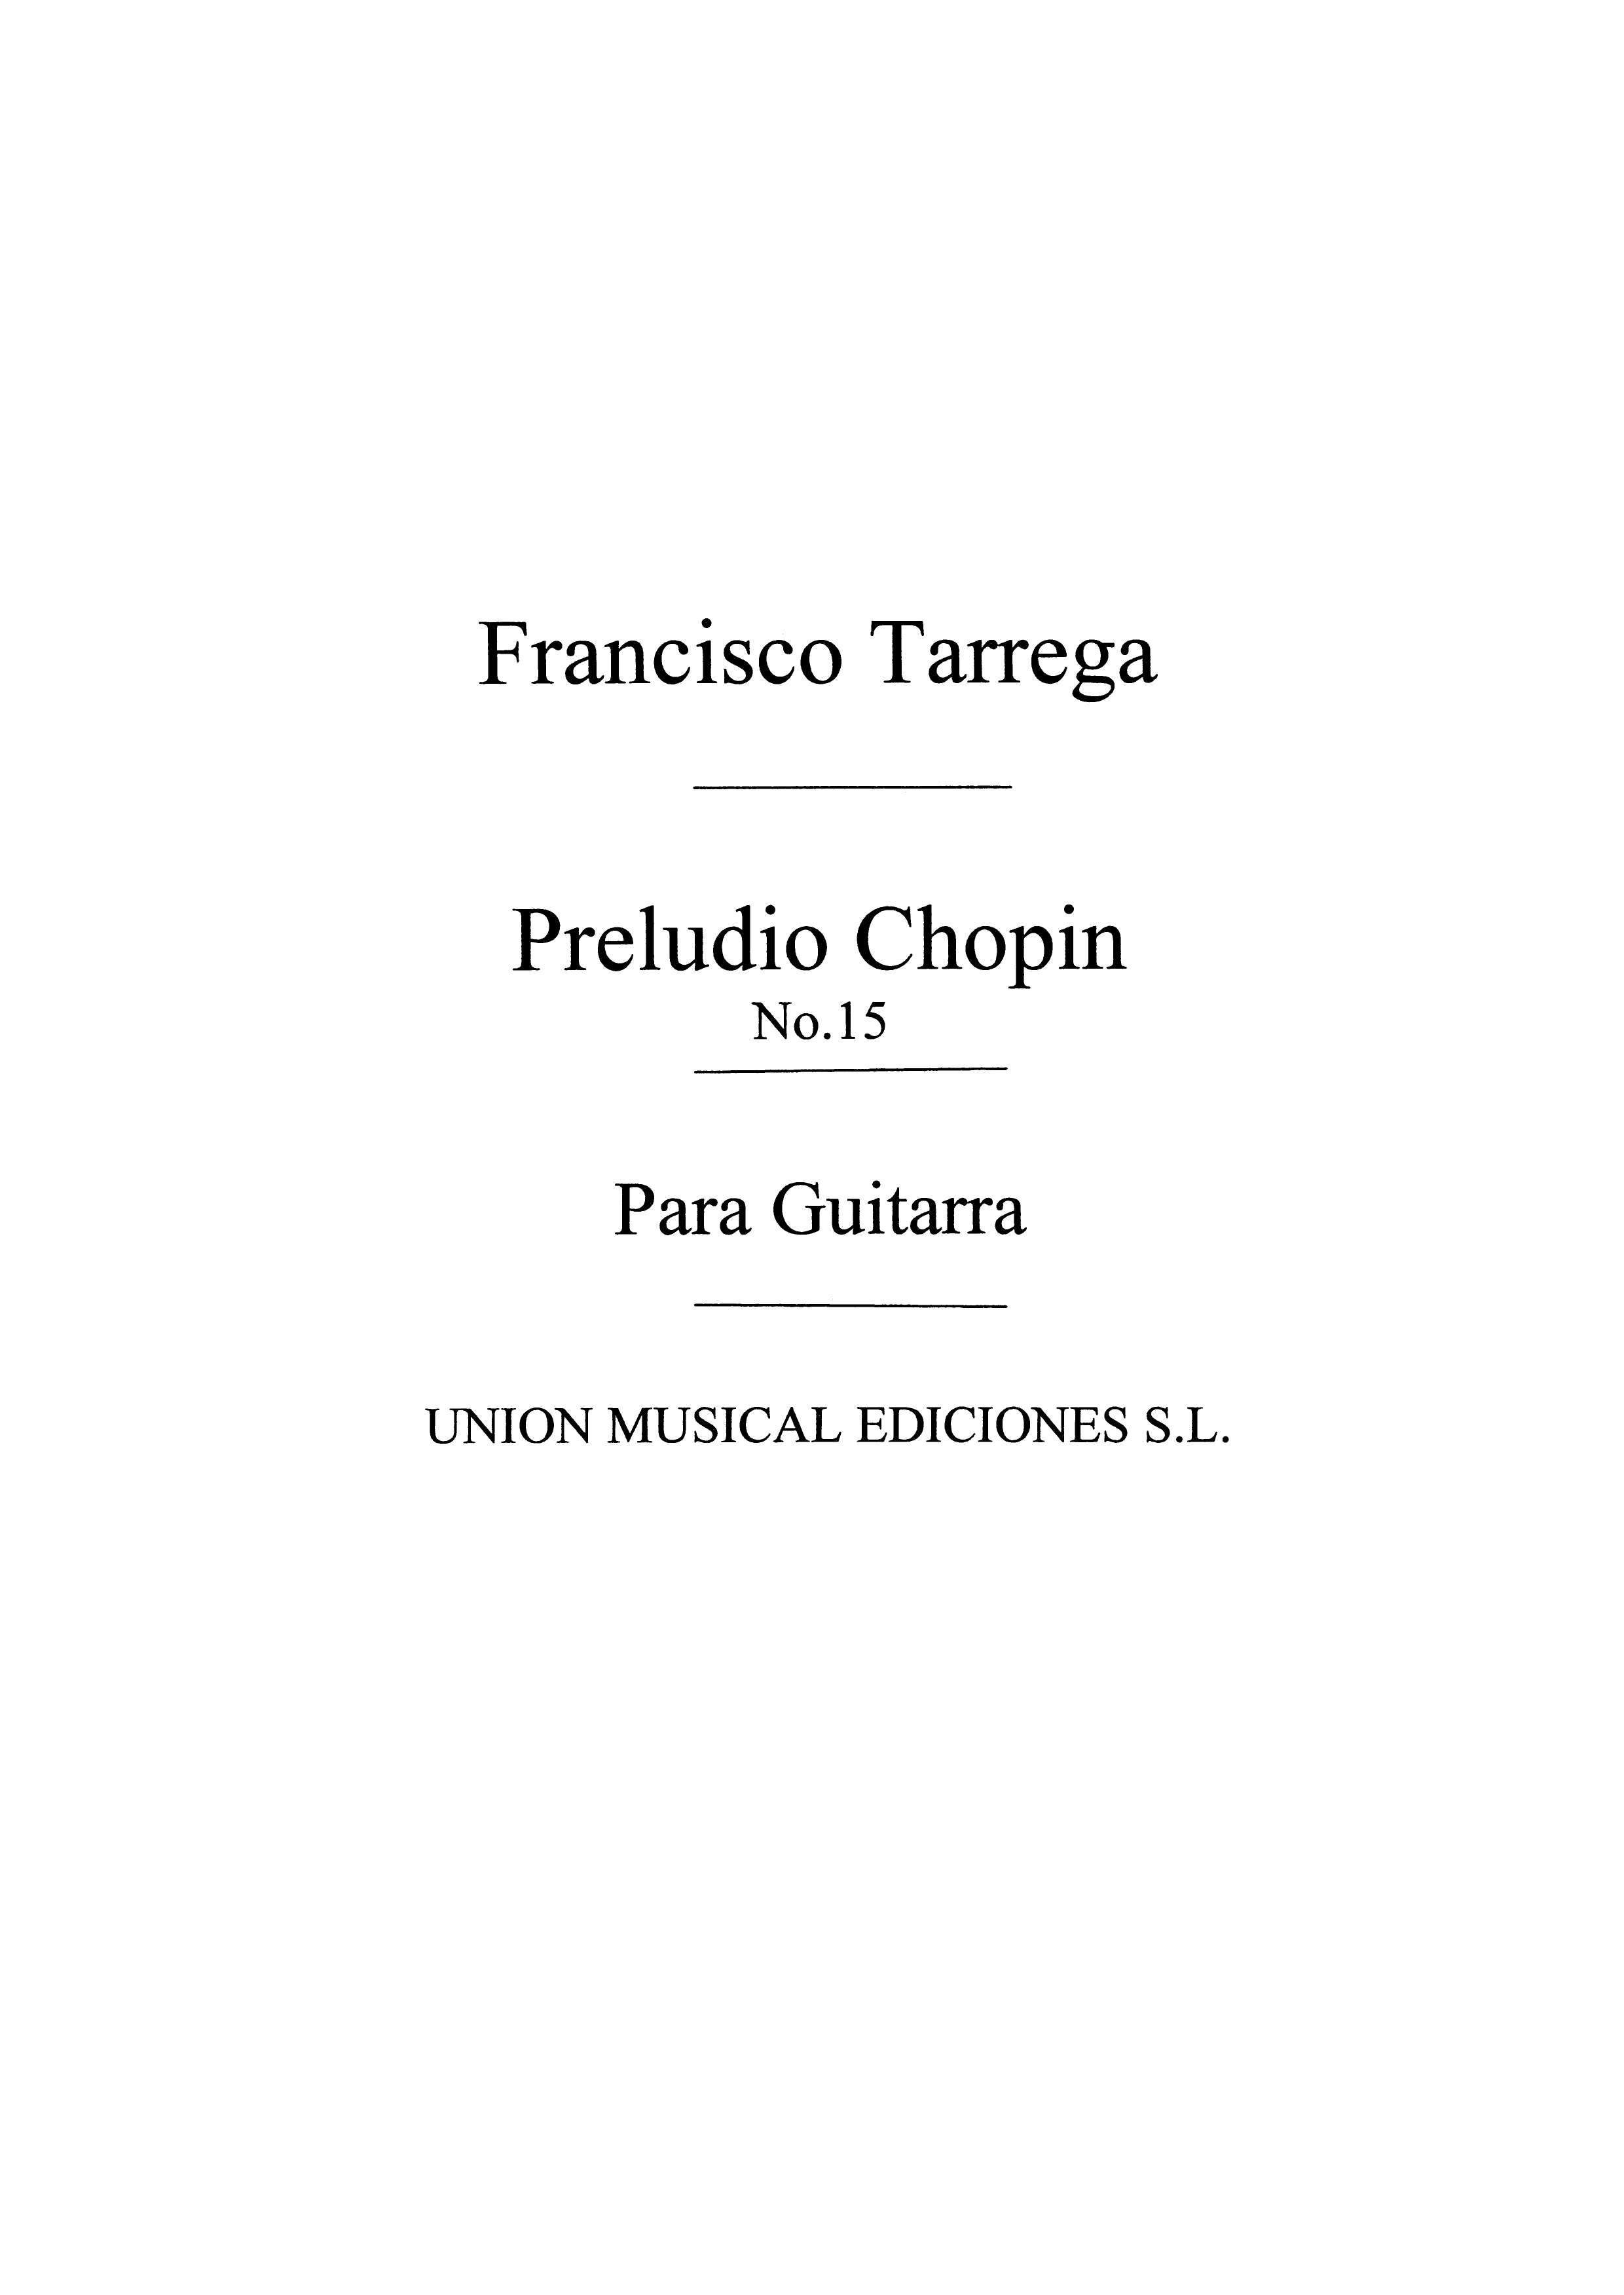 Chopin: Preludio Op.28 No.15 (La Gota De Agua) (Tarrega) for Guitar